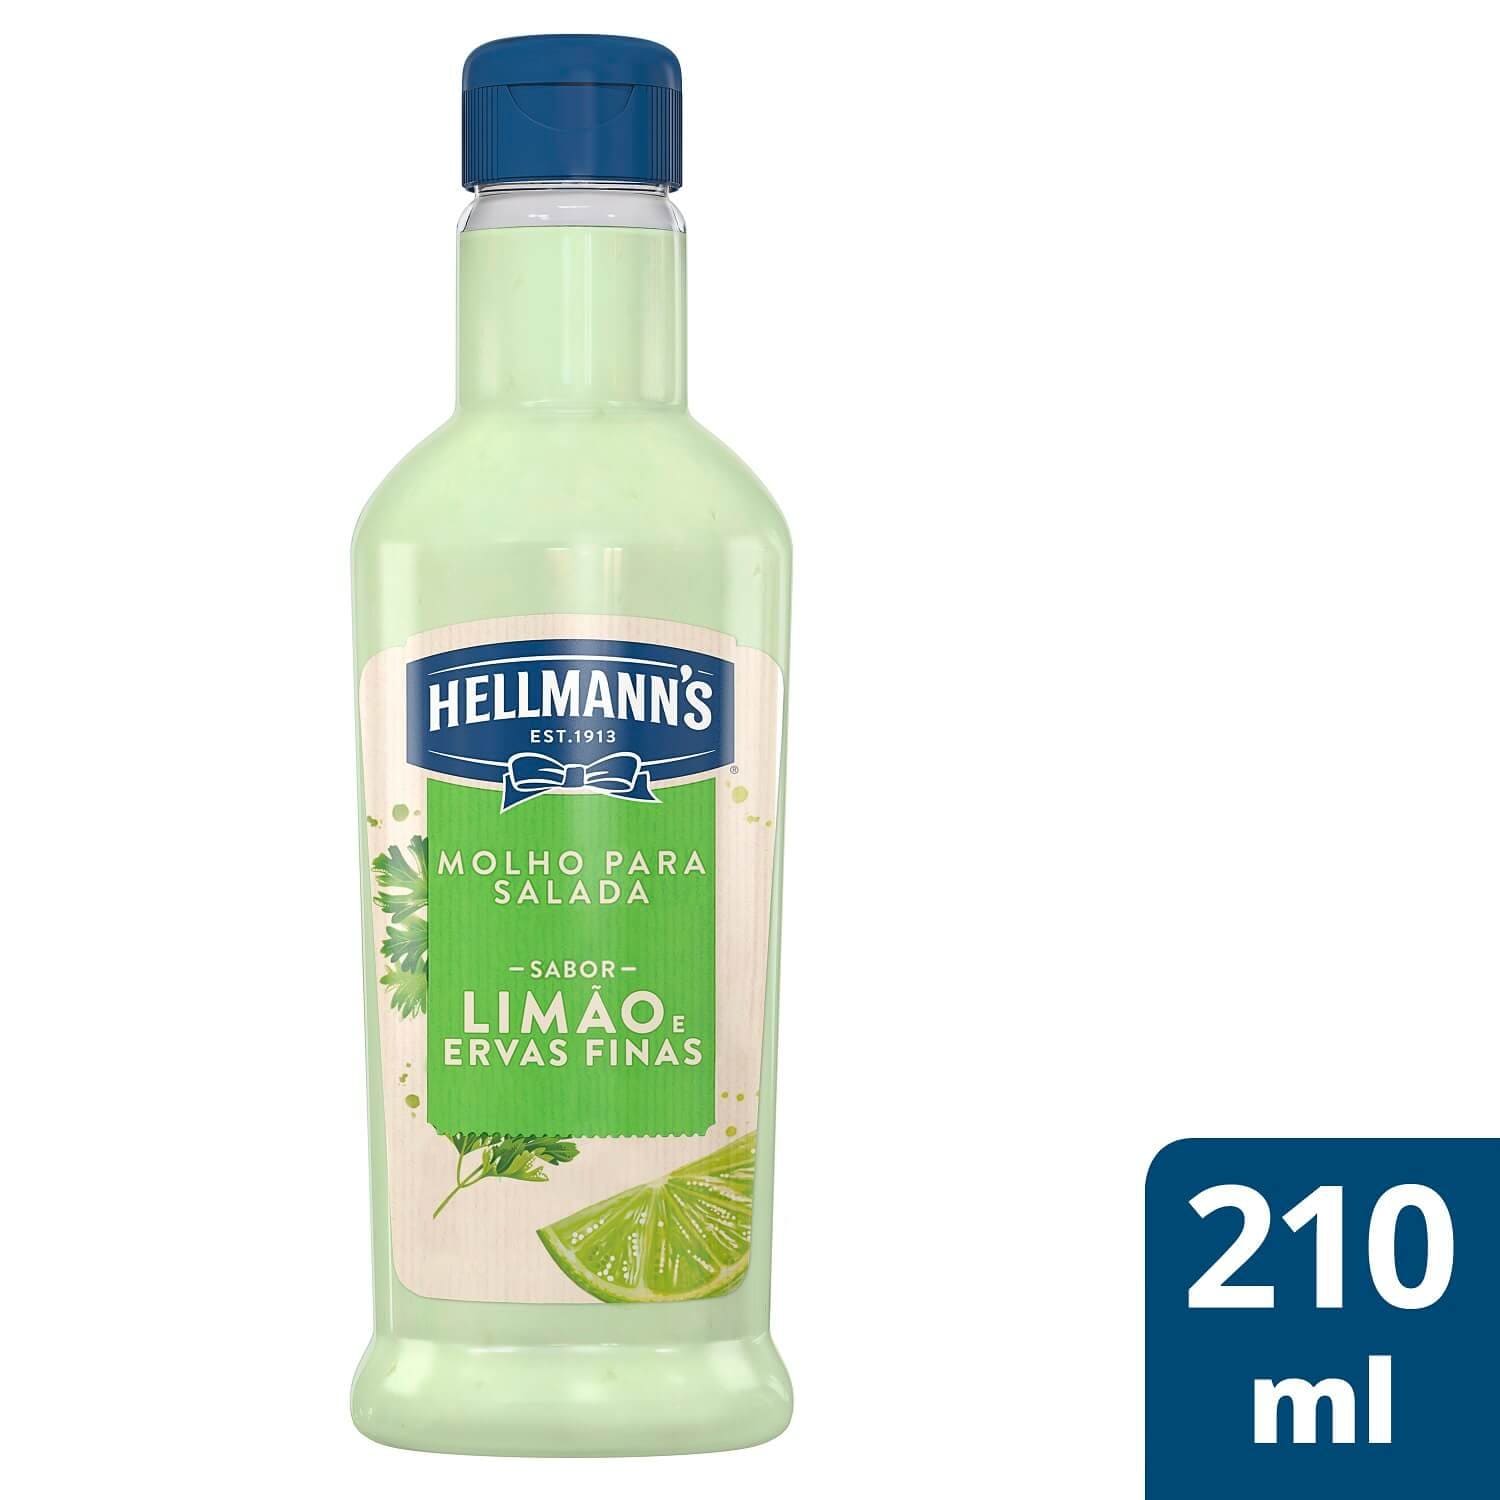 Molho para Salada Hellmann's Limão e Ervas Finas 210 ml